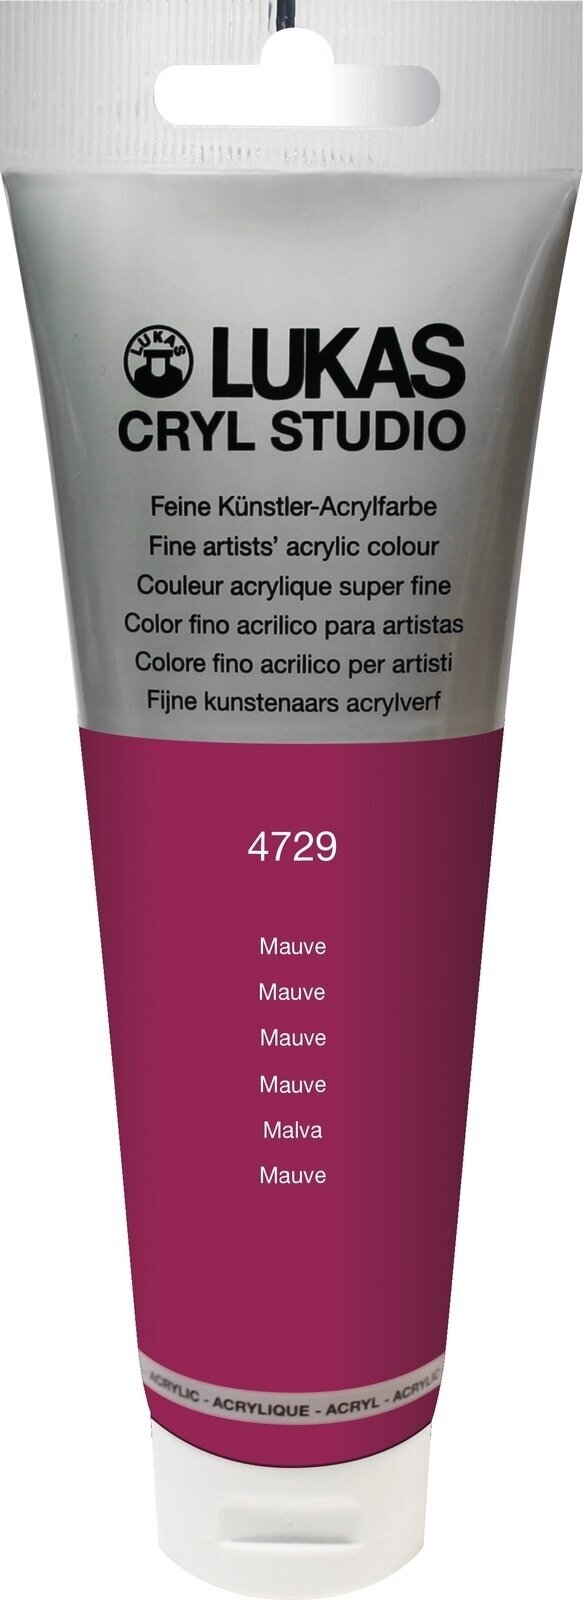 Tinta acrílica Lukas Cryl Studio Acrylic Paint Plastic Tube Tinta acrílica Mauve 125 ml 1 un.